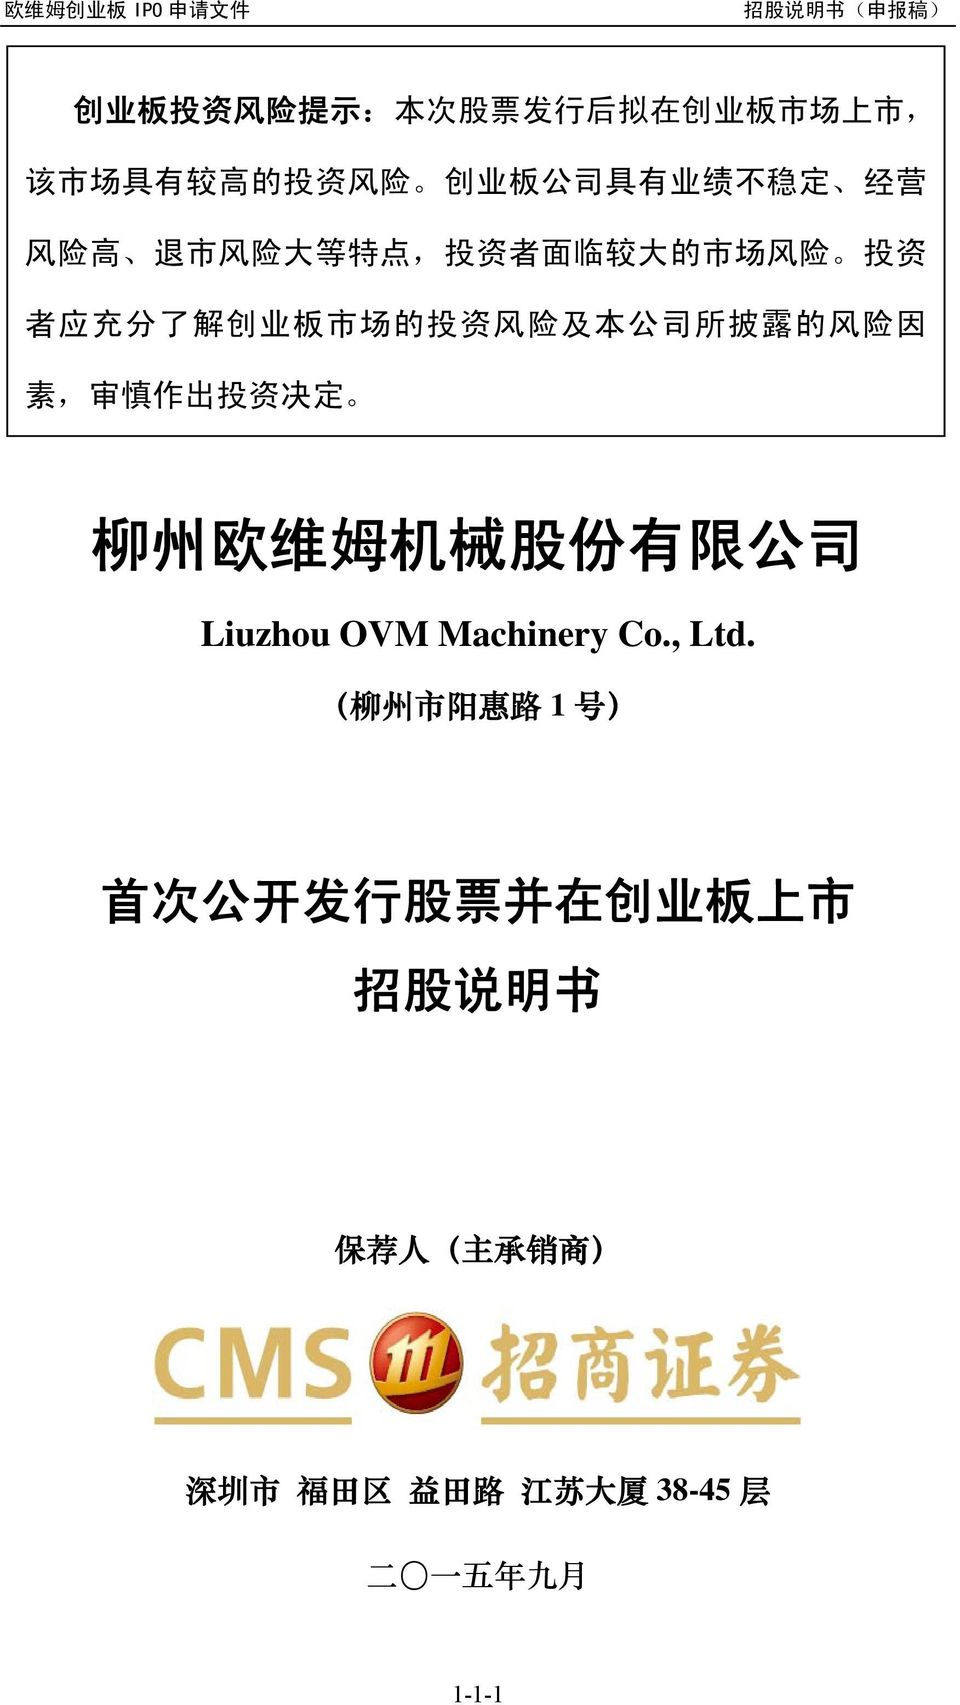 素, 审 慎 作 出 投 资 决 定 柳 州 欧 维 姆 机 械 股 份 有 限 公 司 Liuzhou OVM Machinery Co., Ltd.